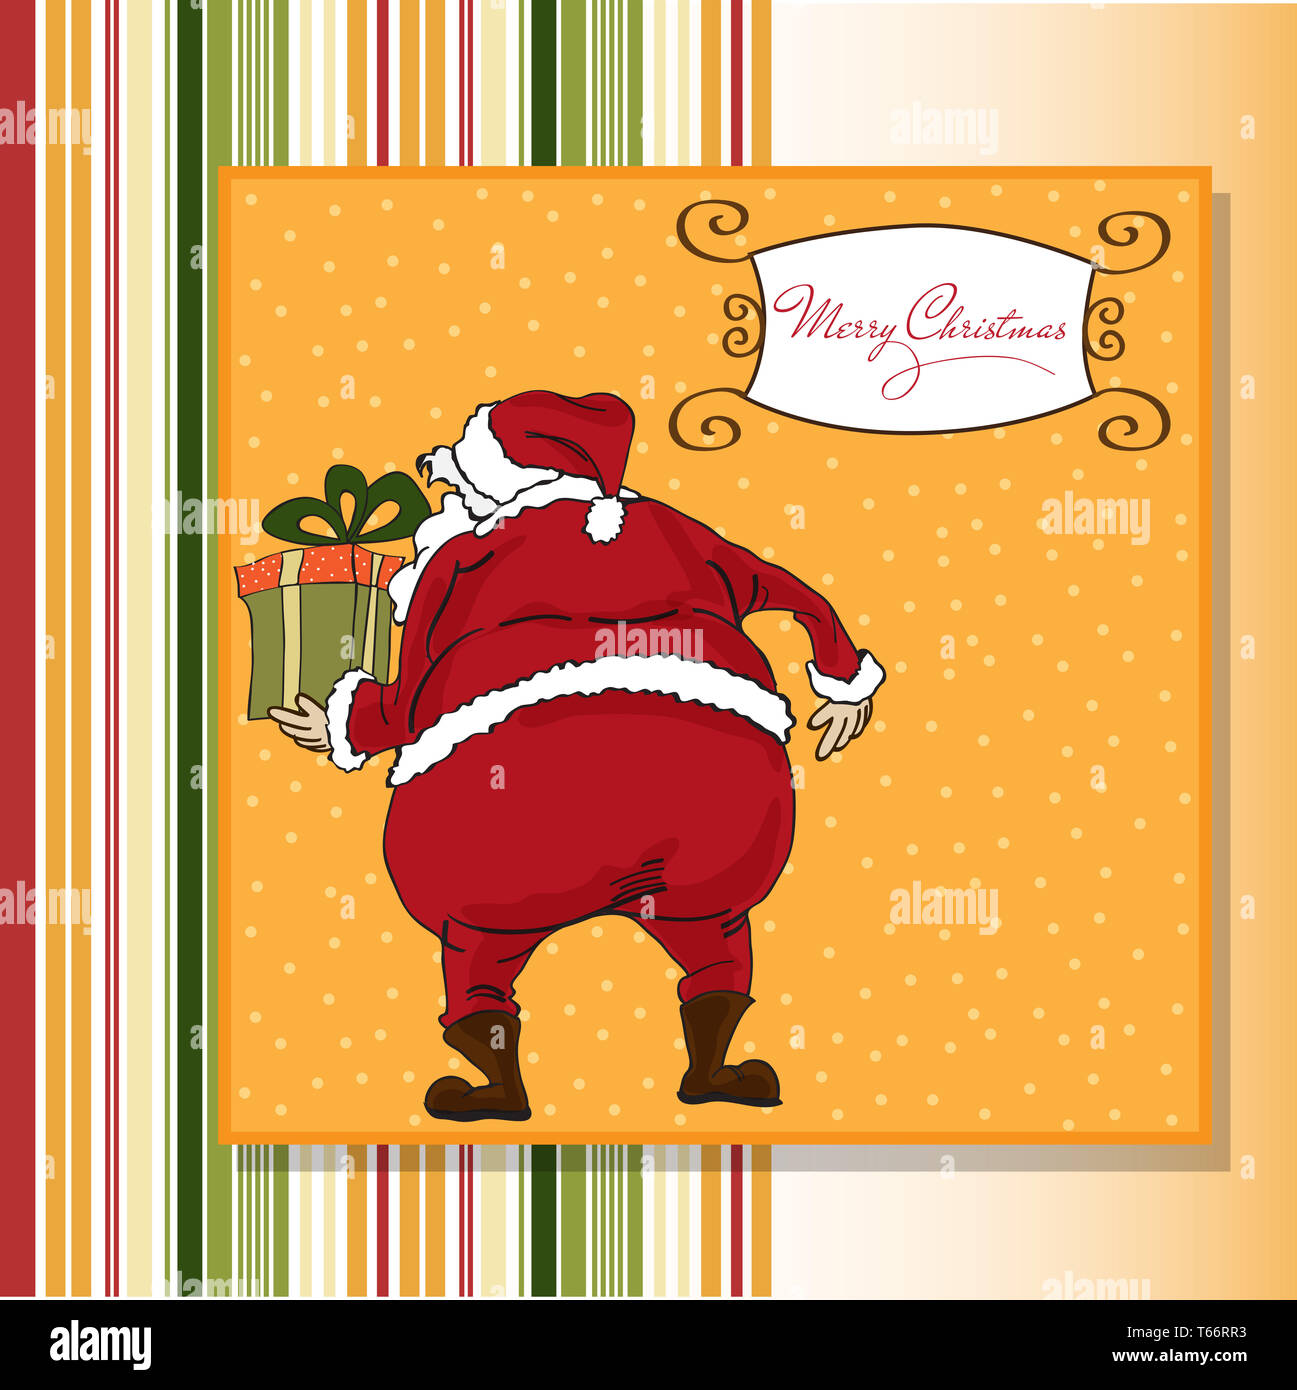 Weihnachtsgrußkarte mit dem Weihnachtsmann Stockfoto